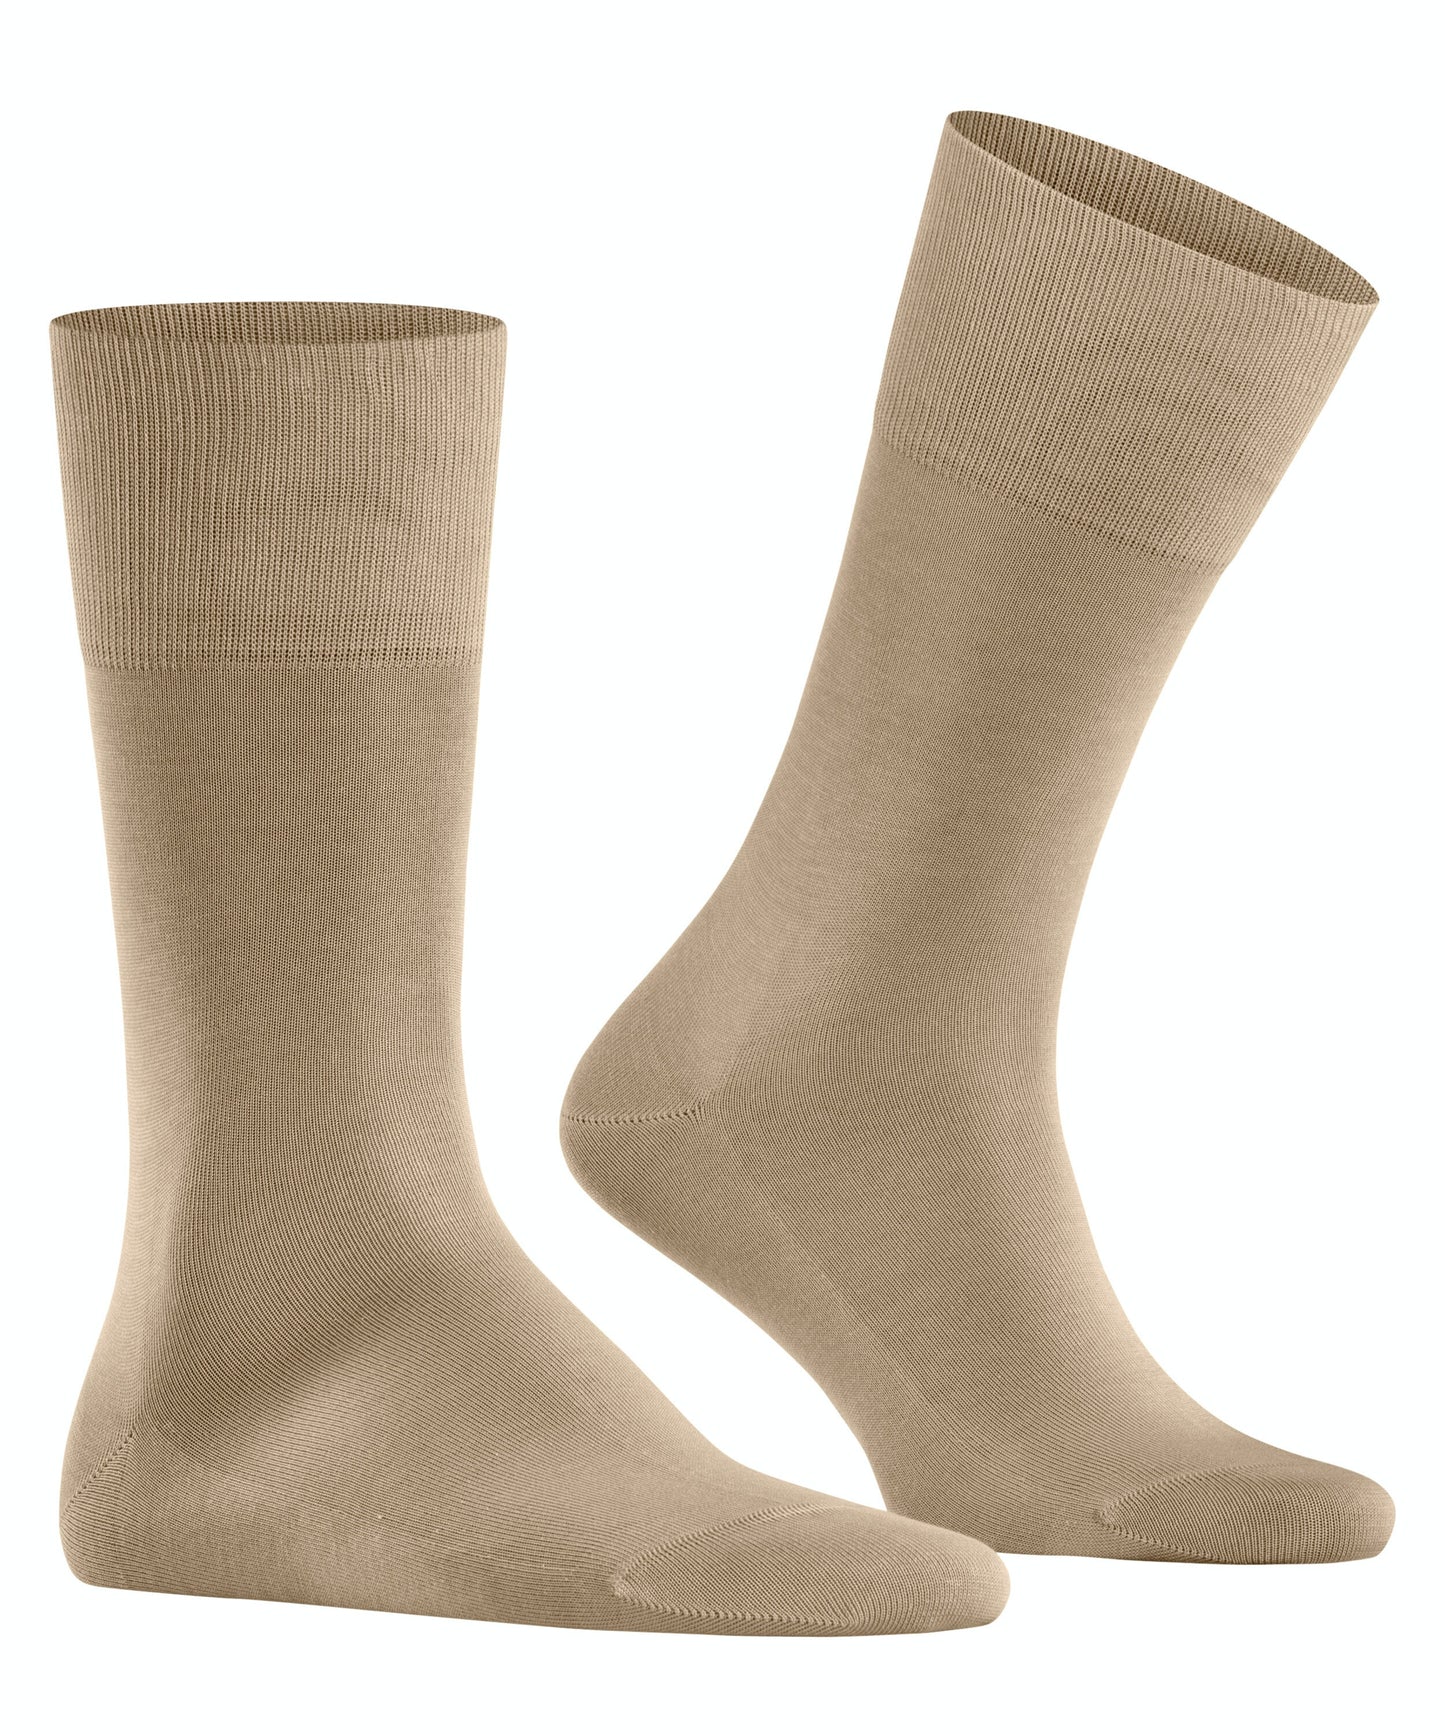 FALKE TIAGO Socks in Country Beige 14662